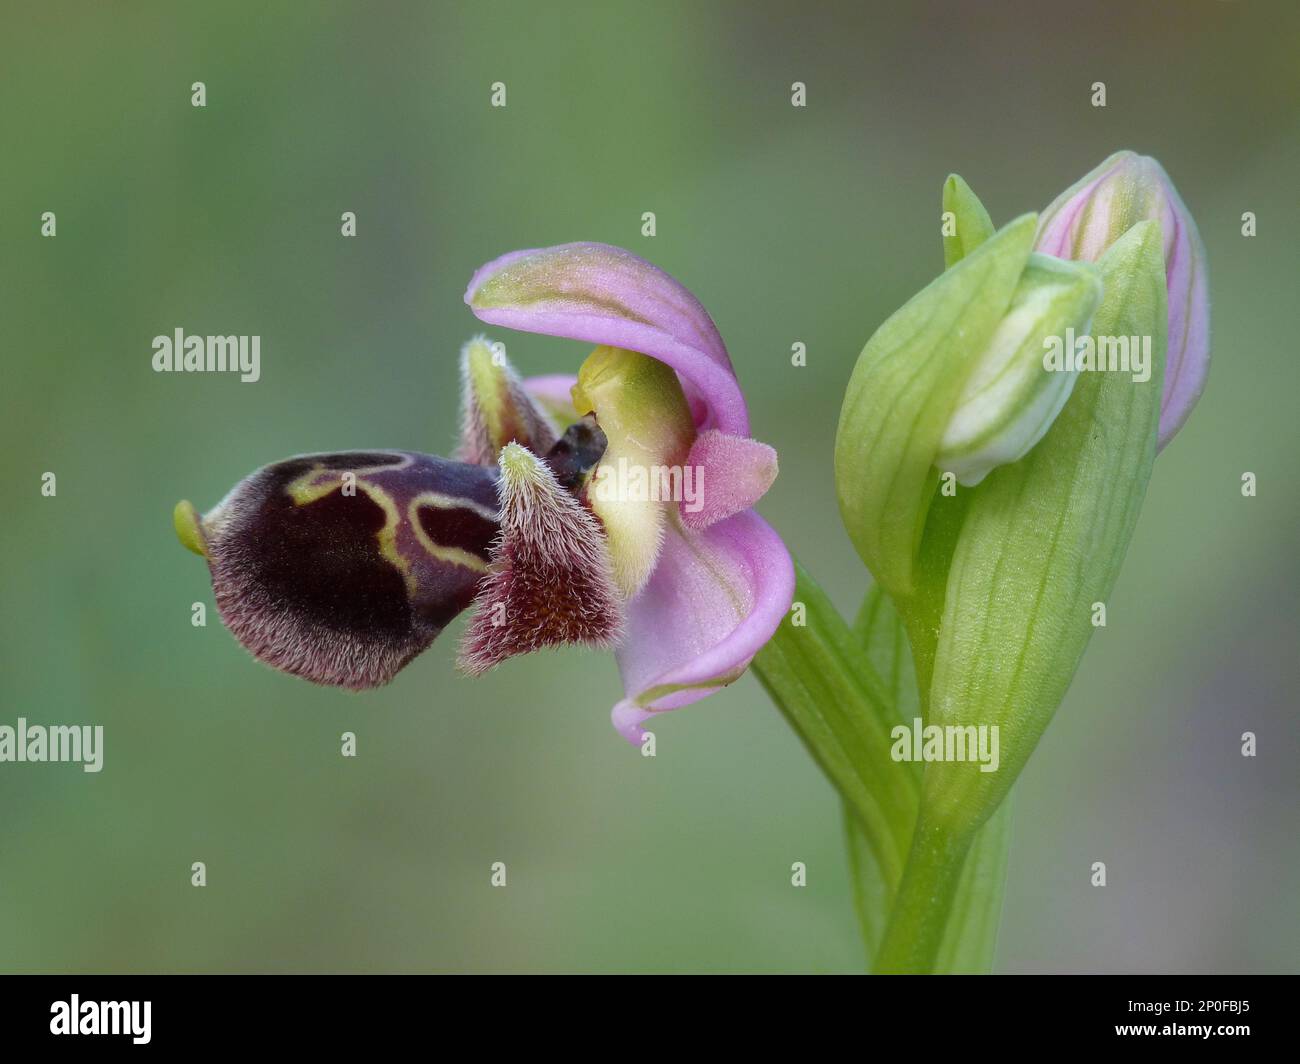 Umbilicata, Carmel's Ragwort, Attic Ragwort, Orchids Umbilicata Close up of flower, Cyprus, March 2015 Stock Photo